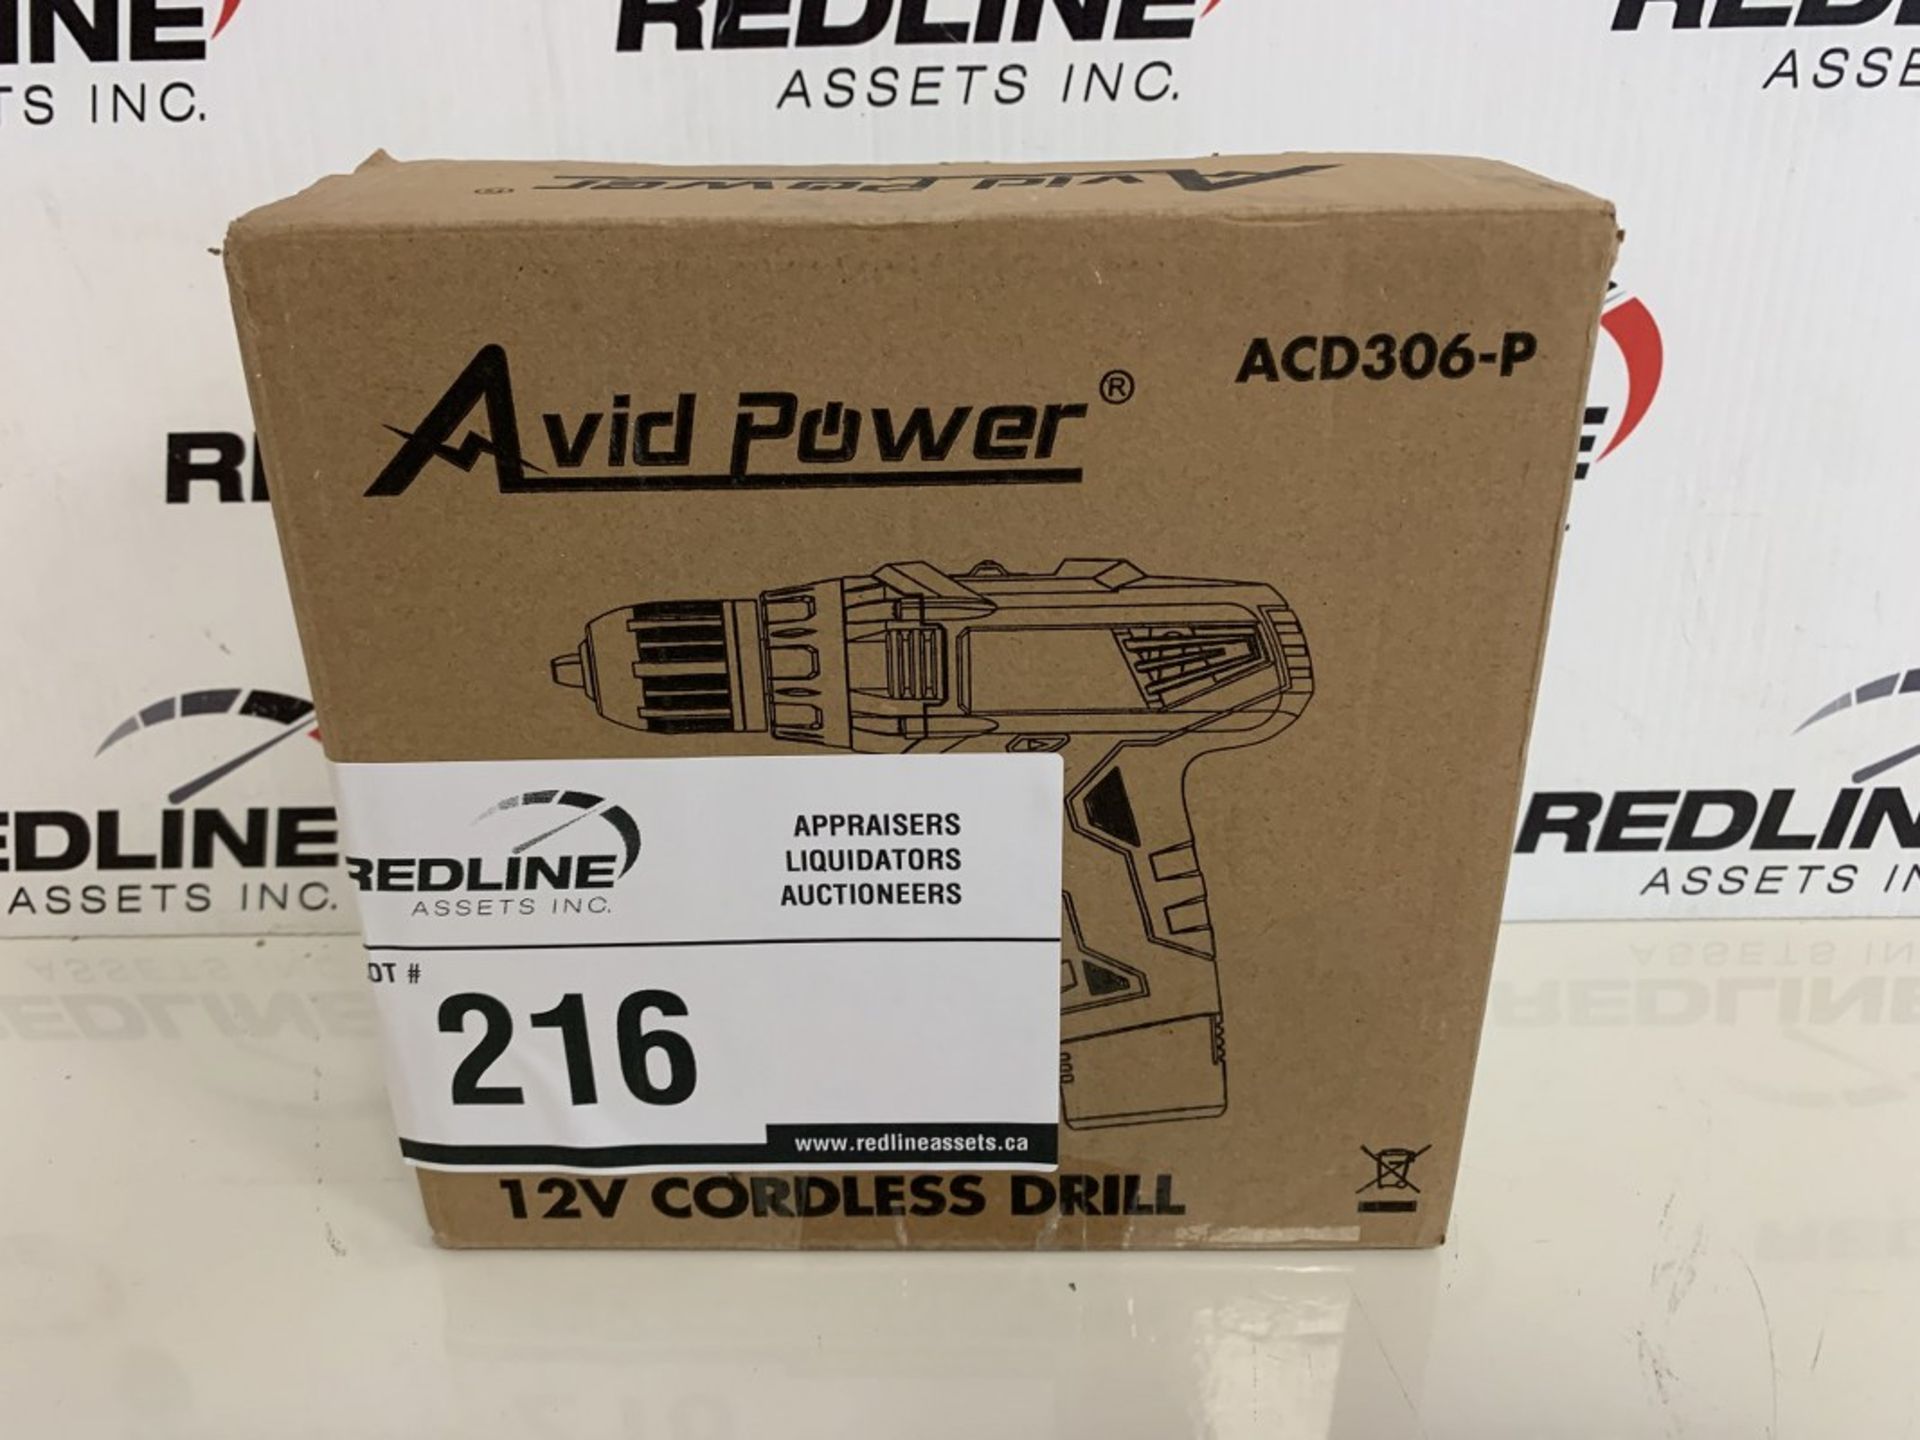 Avid Power - 12V Cordless Drill